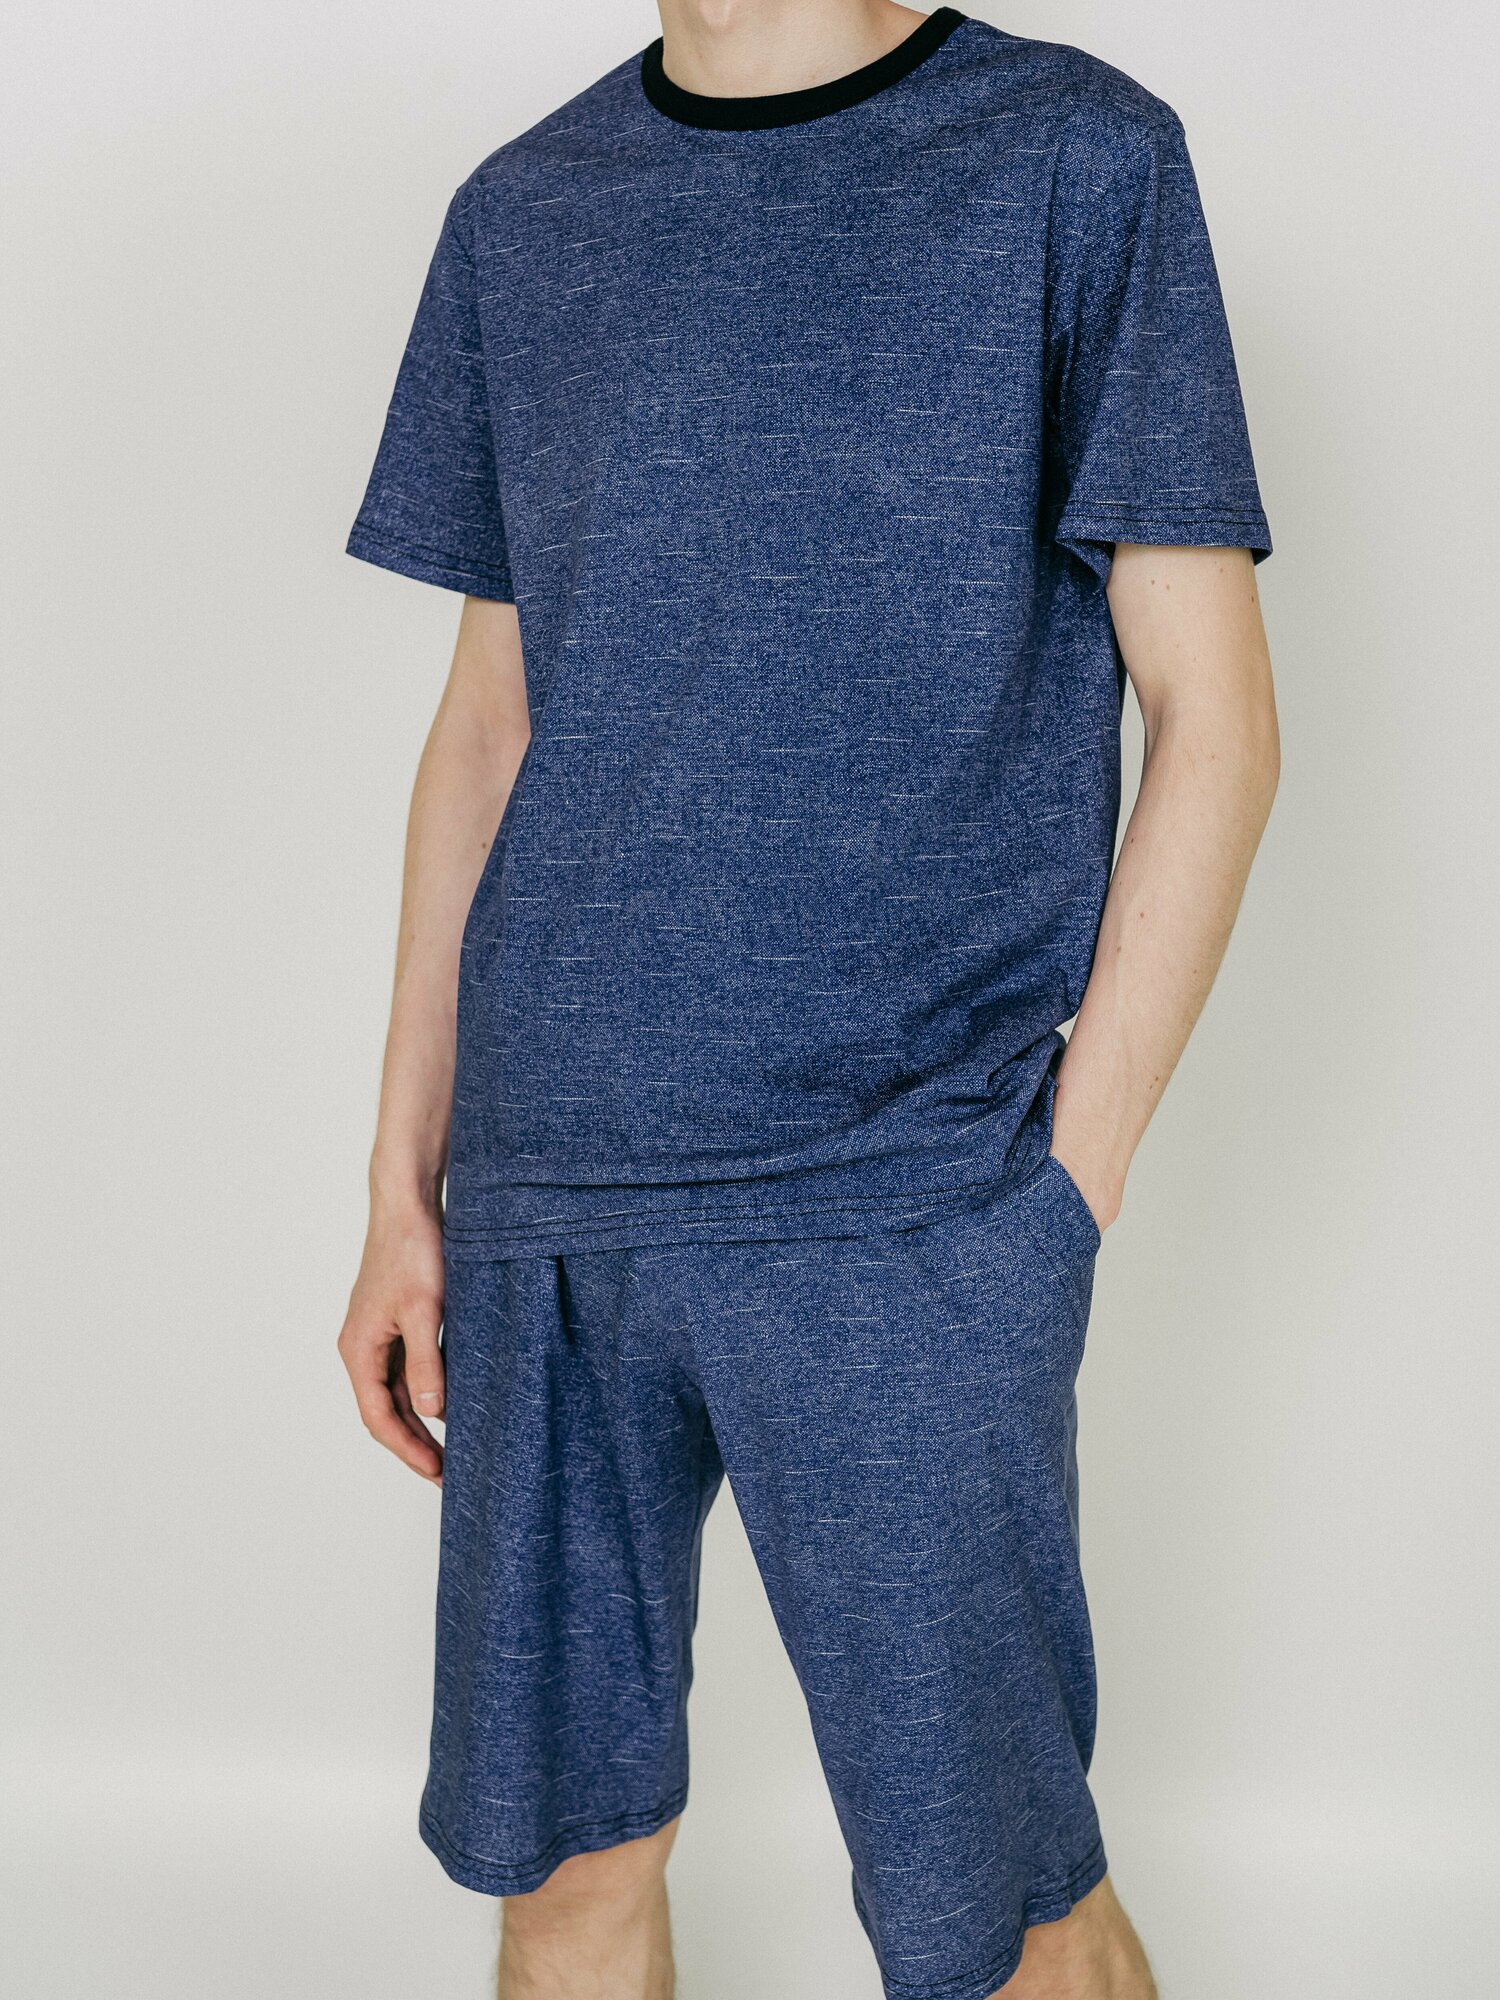 Мужская пижама, мужской пижамный комплект ARISTARHOV, Футболка + Шорты, Синий джинс, размер 54 - фотография № 1